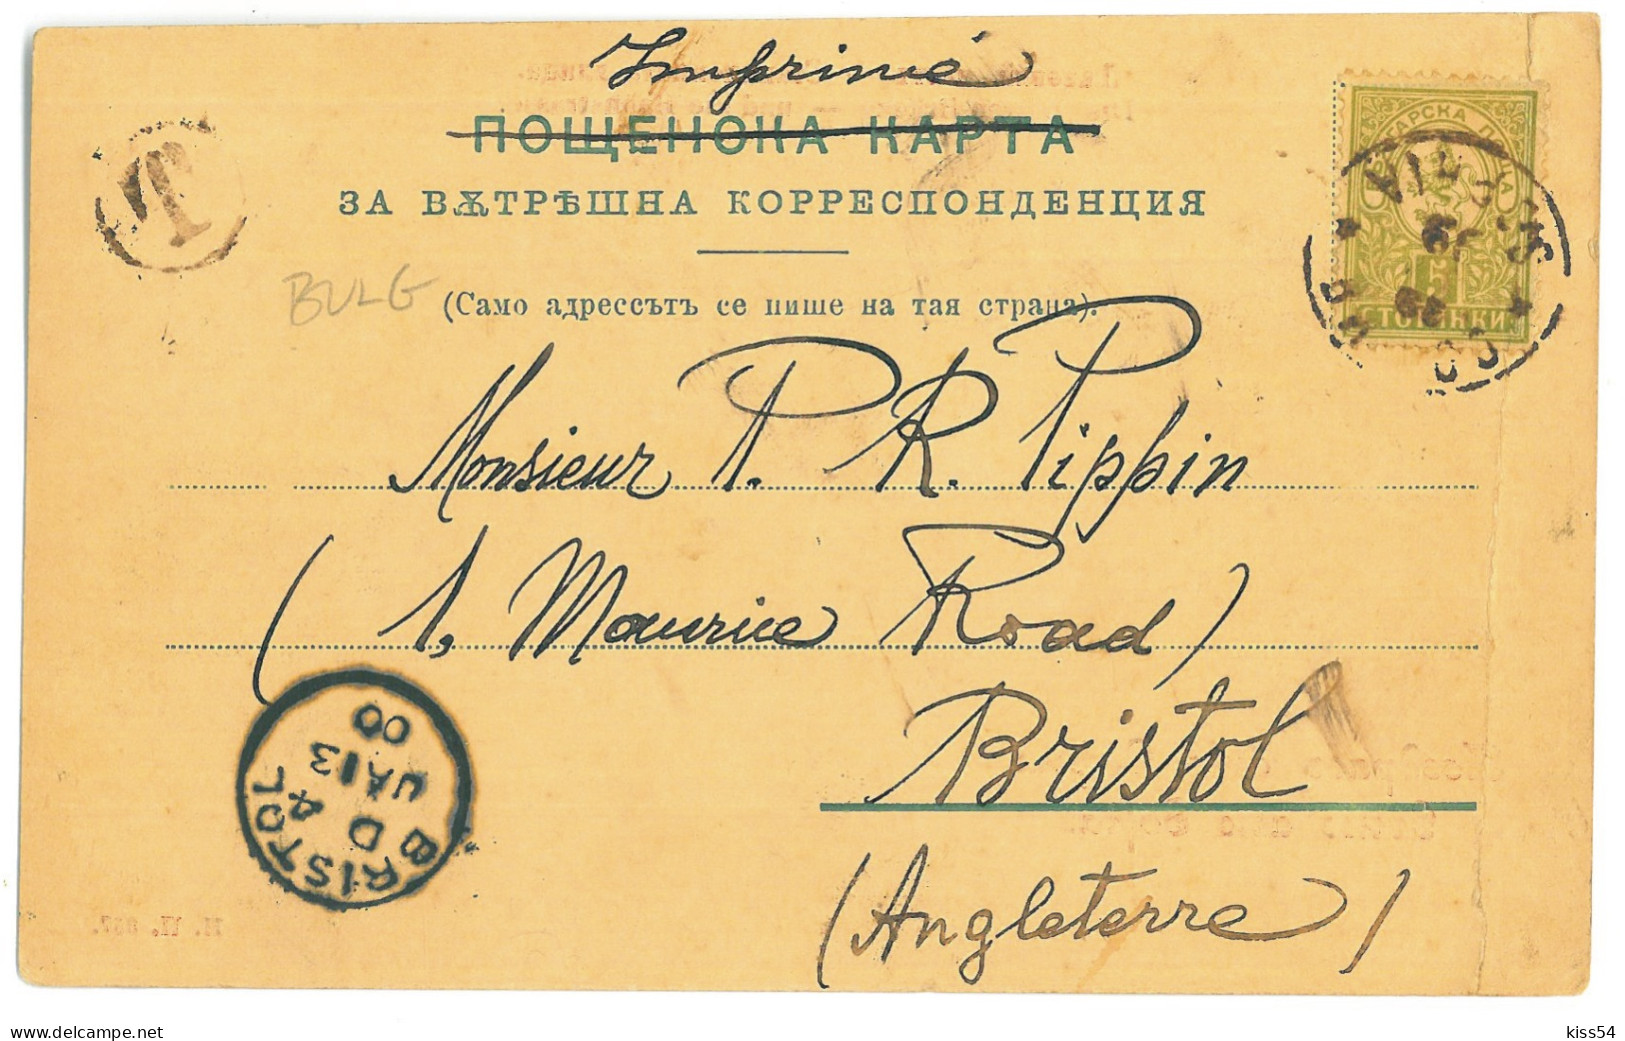 BUL 09 - 23493 SOFIA, Litho, Bulgaria - Old Postcard - Used - 1900 - Bulgaria